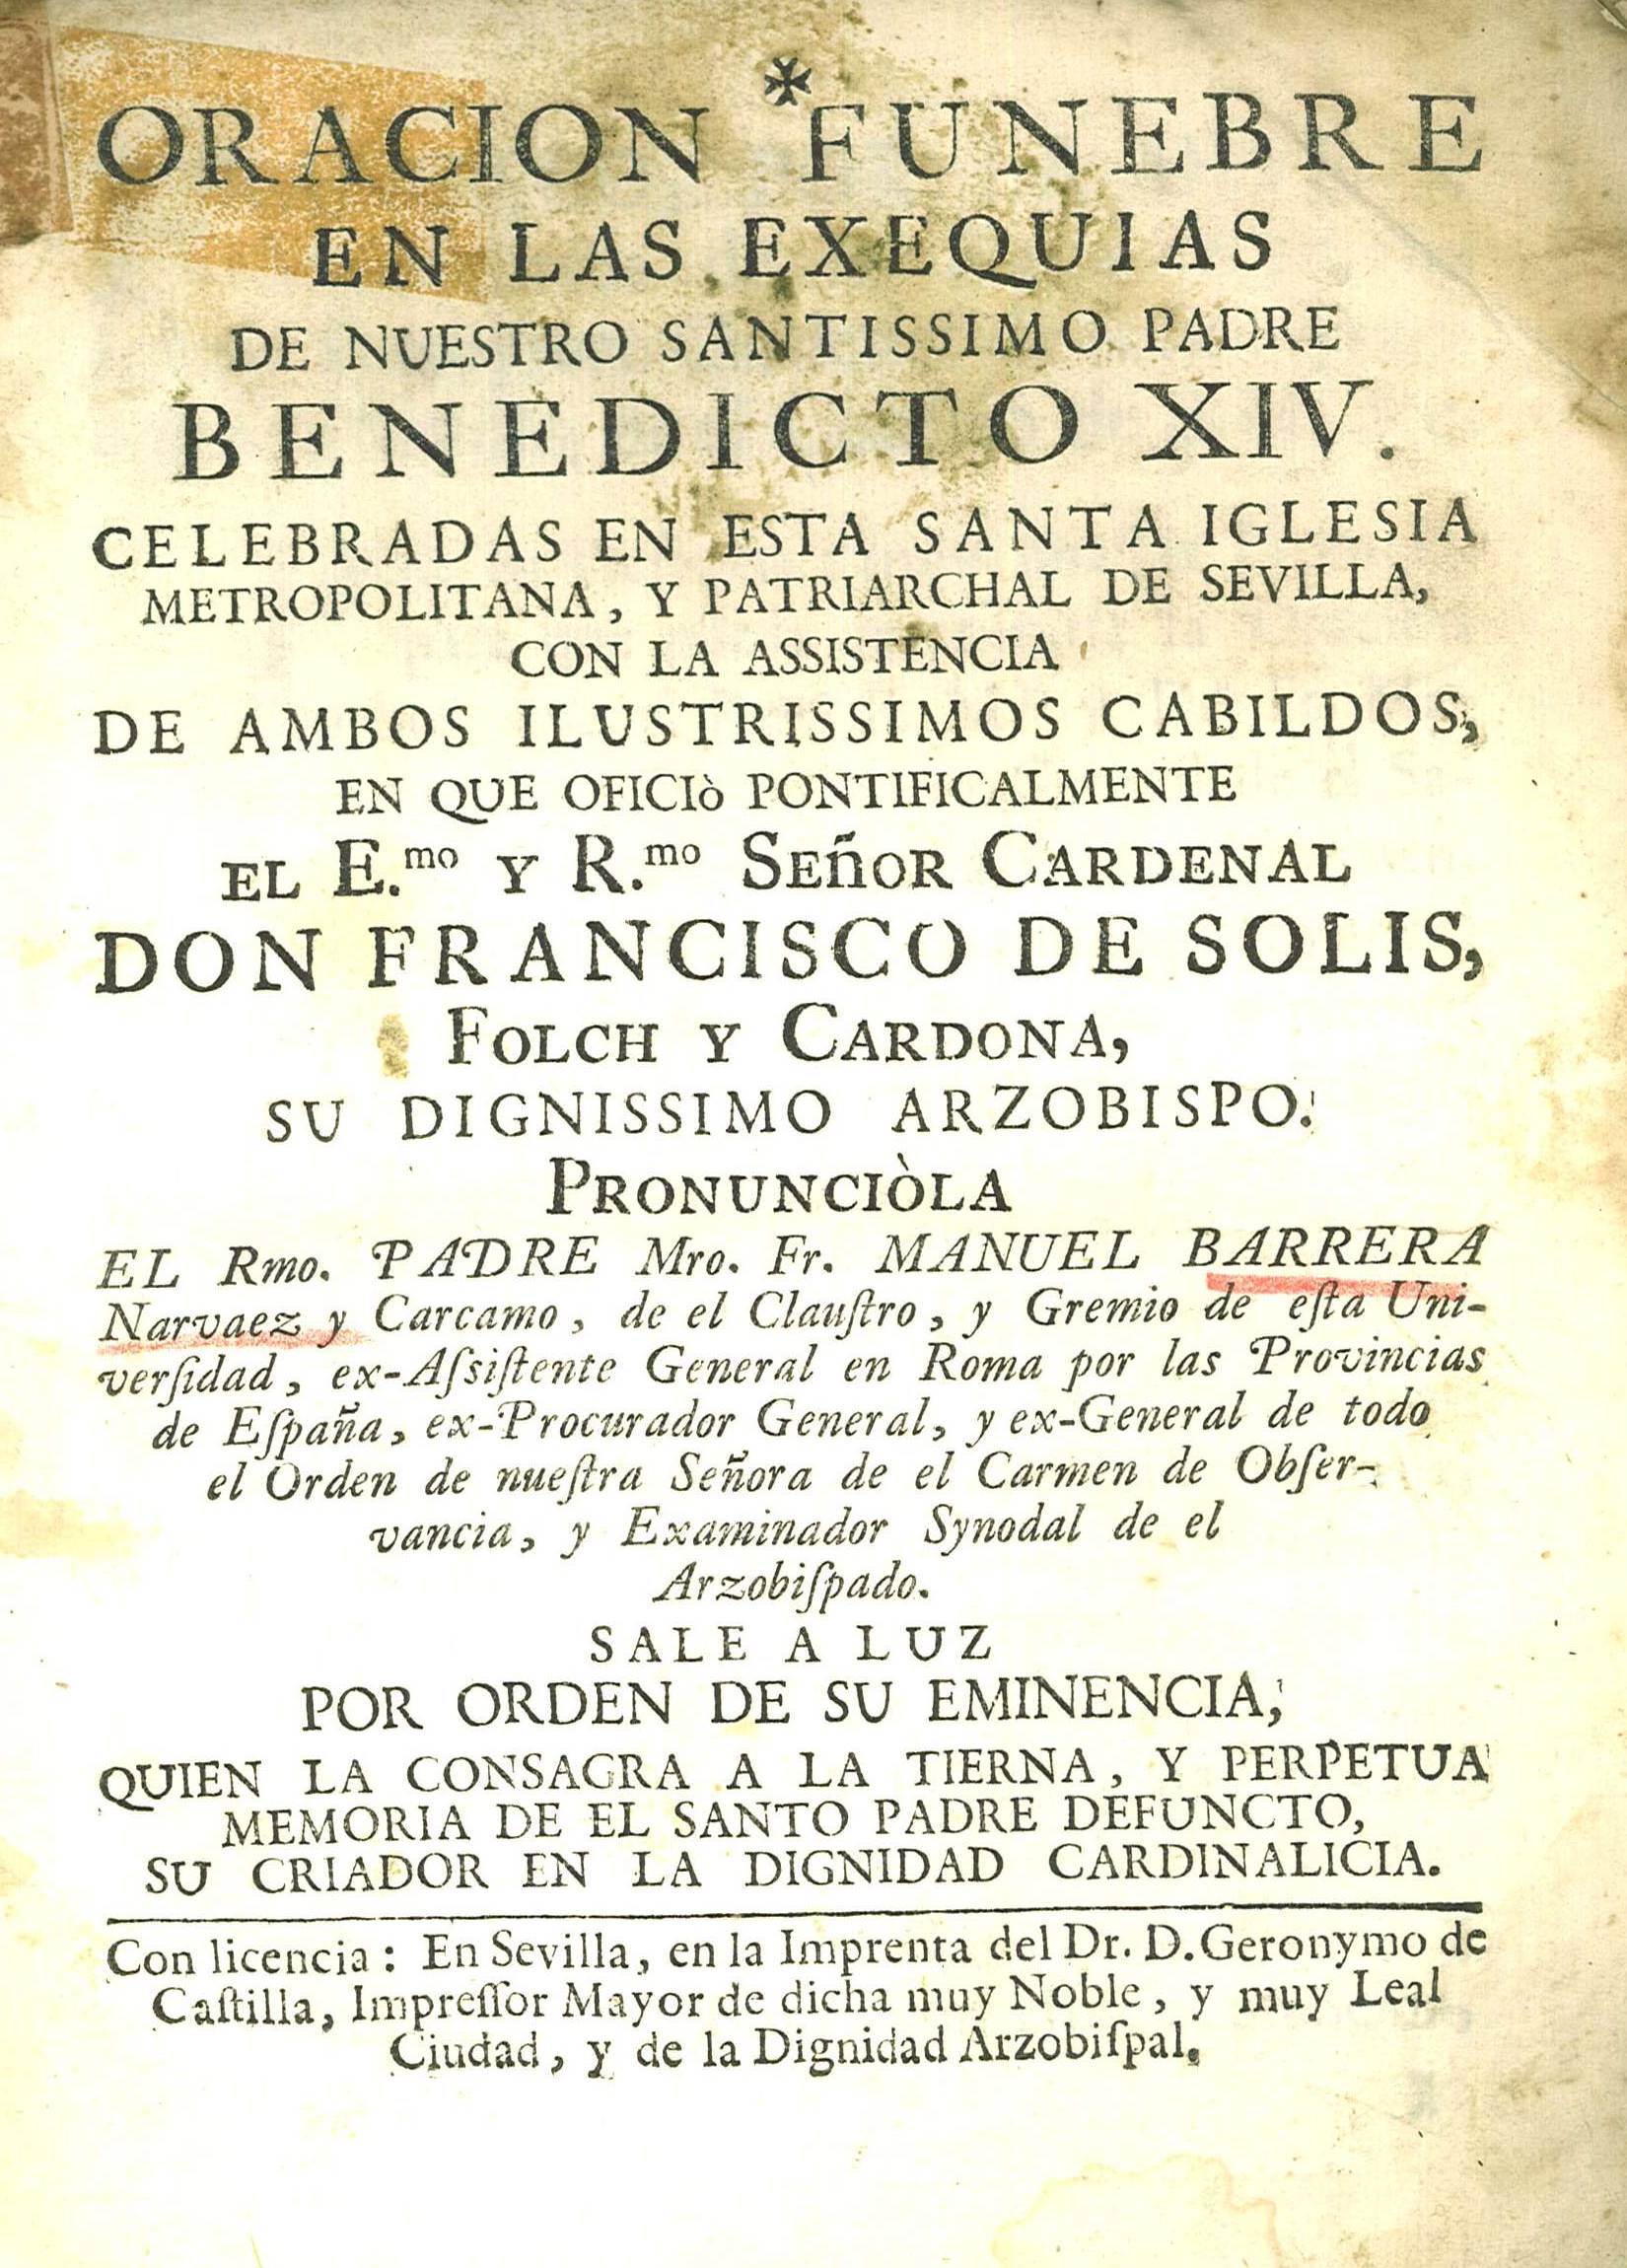 Oracion funebre en las exequias de Nuestro Santissimo Padre Benedicto XIV...